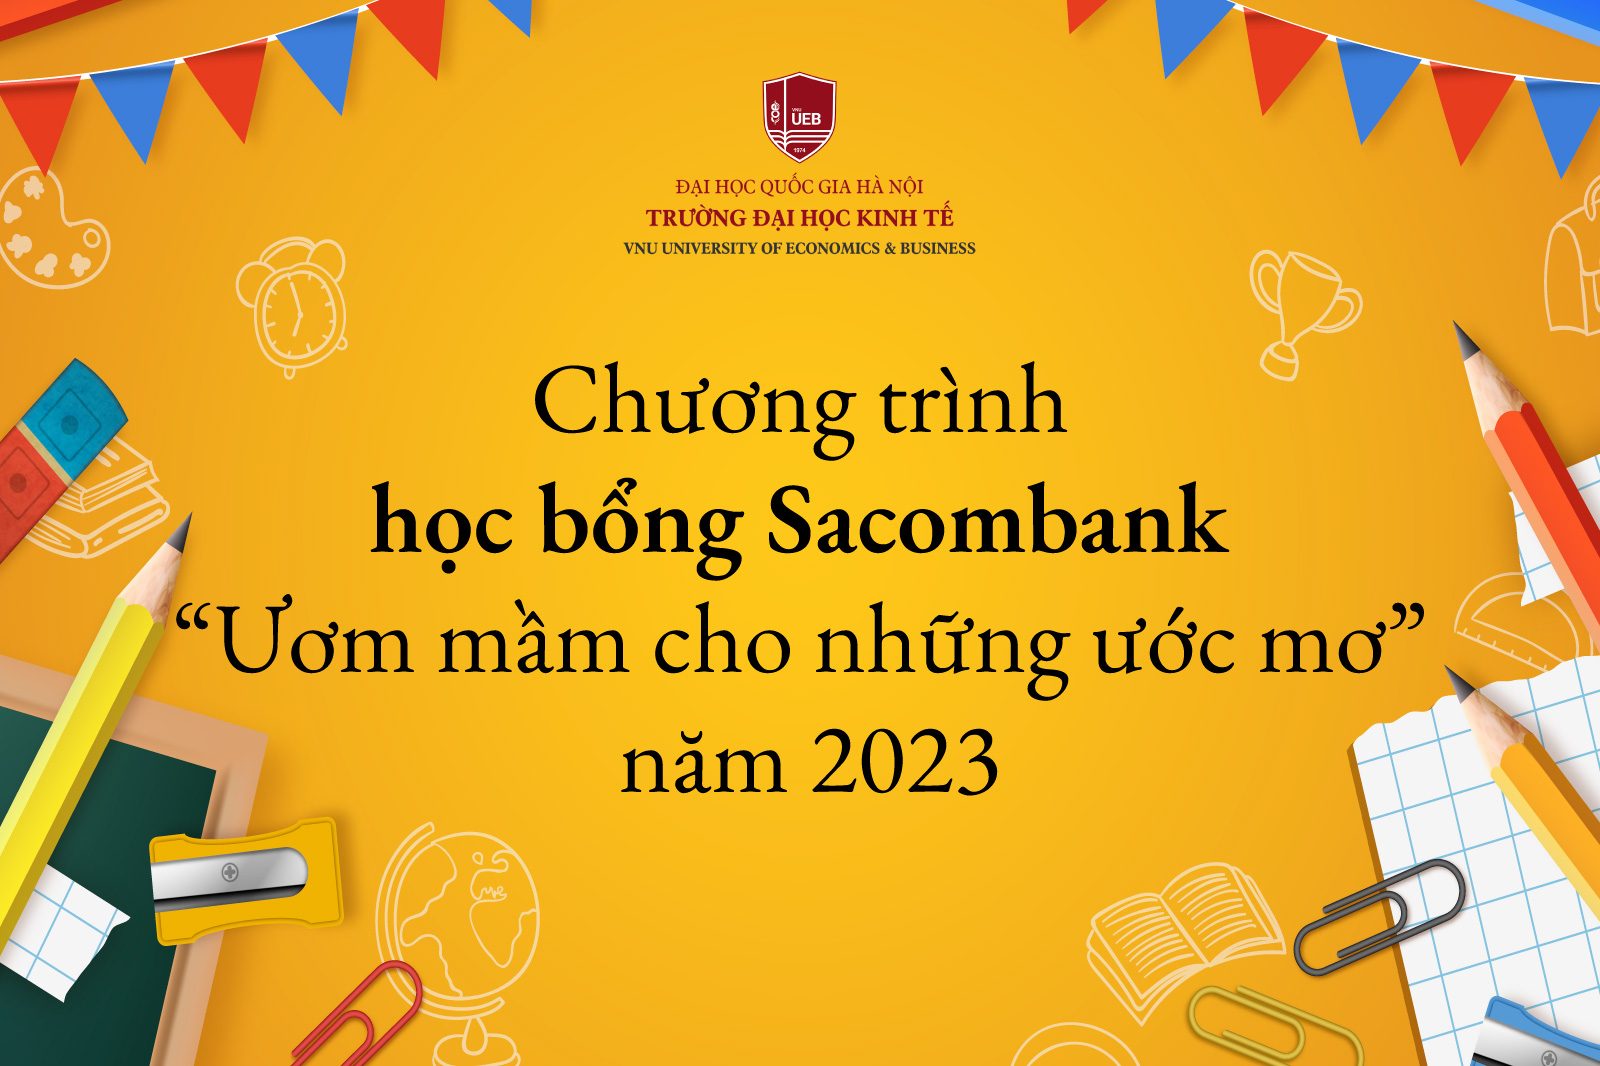 Chương trình học bổng Sacombank  “Ươm mầm cho những ước mơ” năm 2023